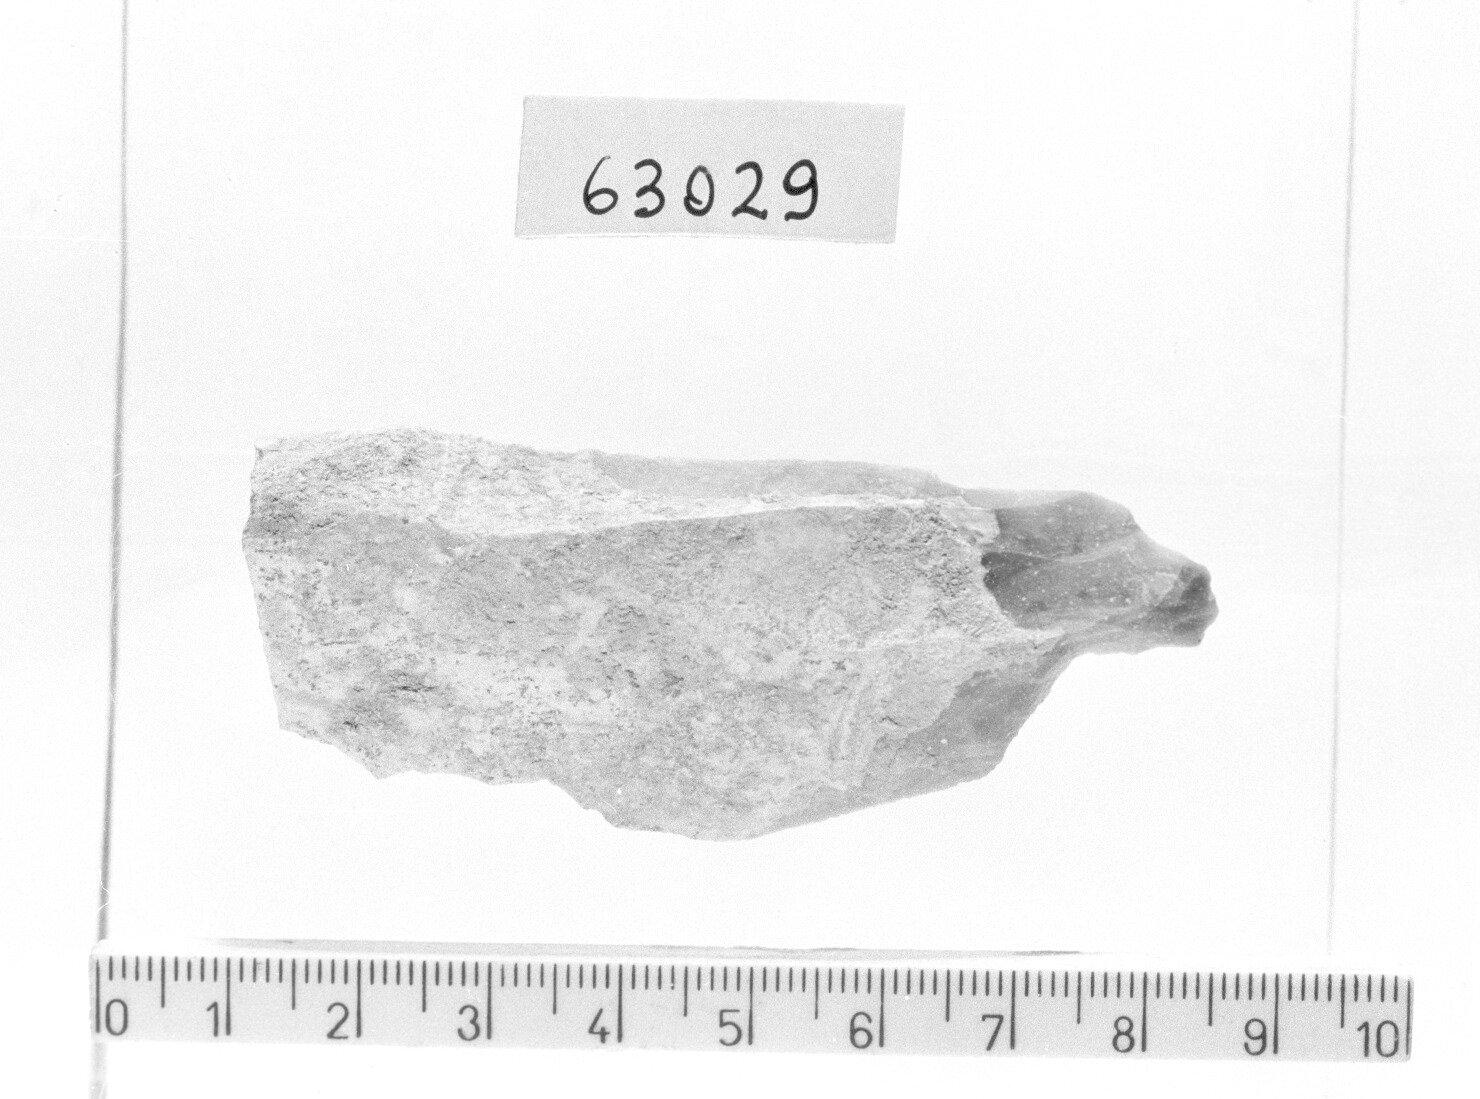 lama a cran con ritocco (Paleolitico superiore)